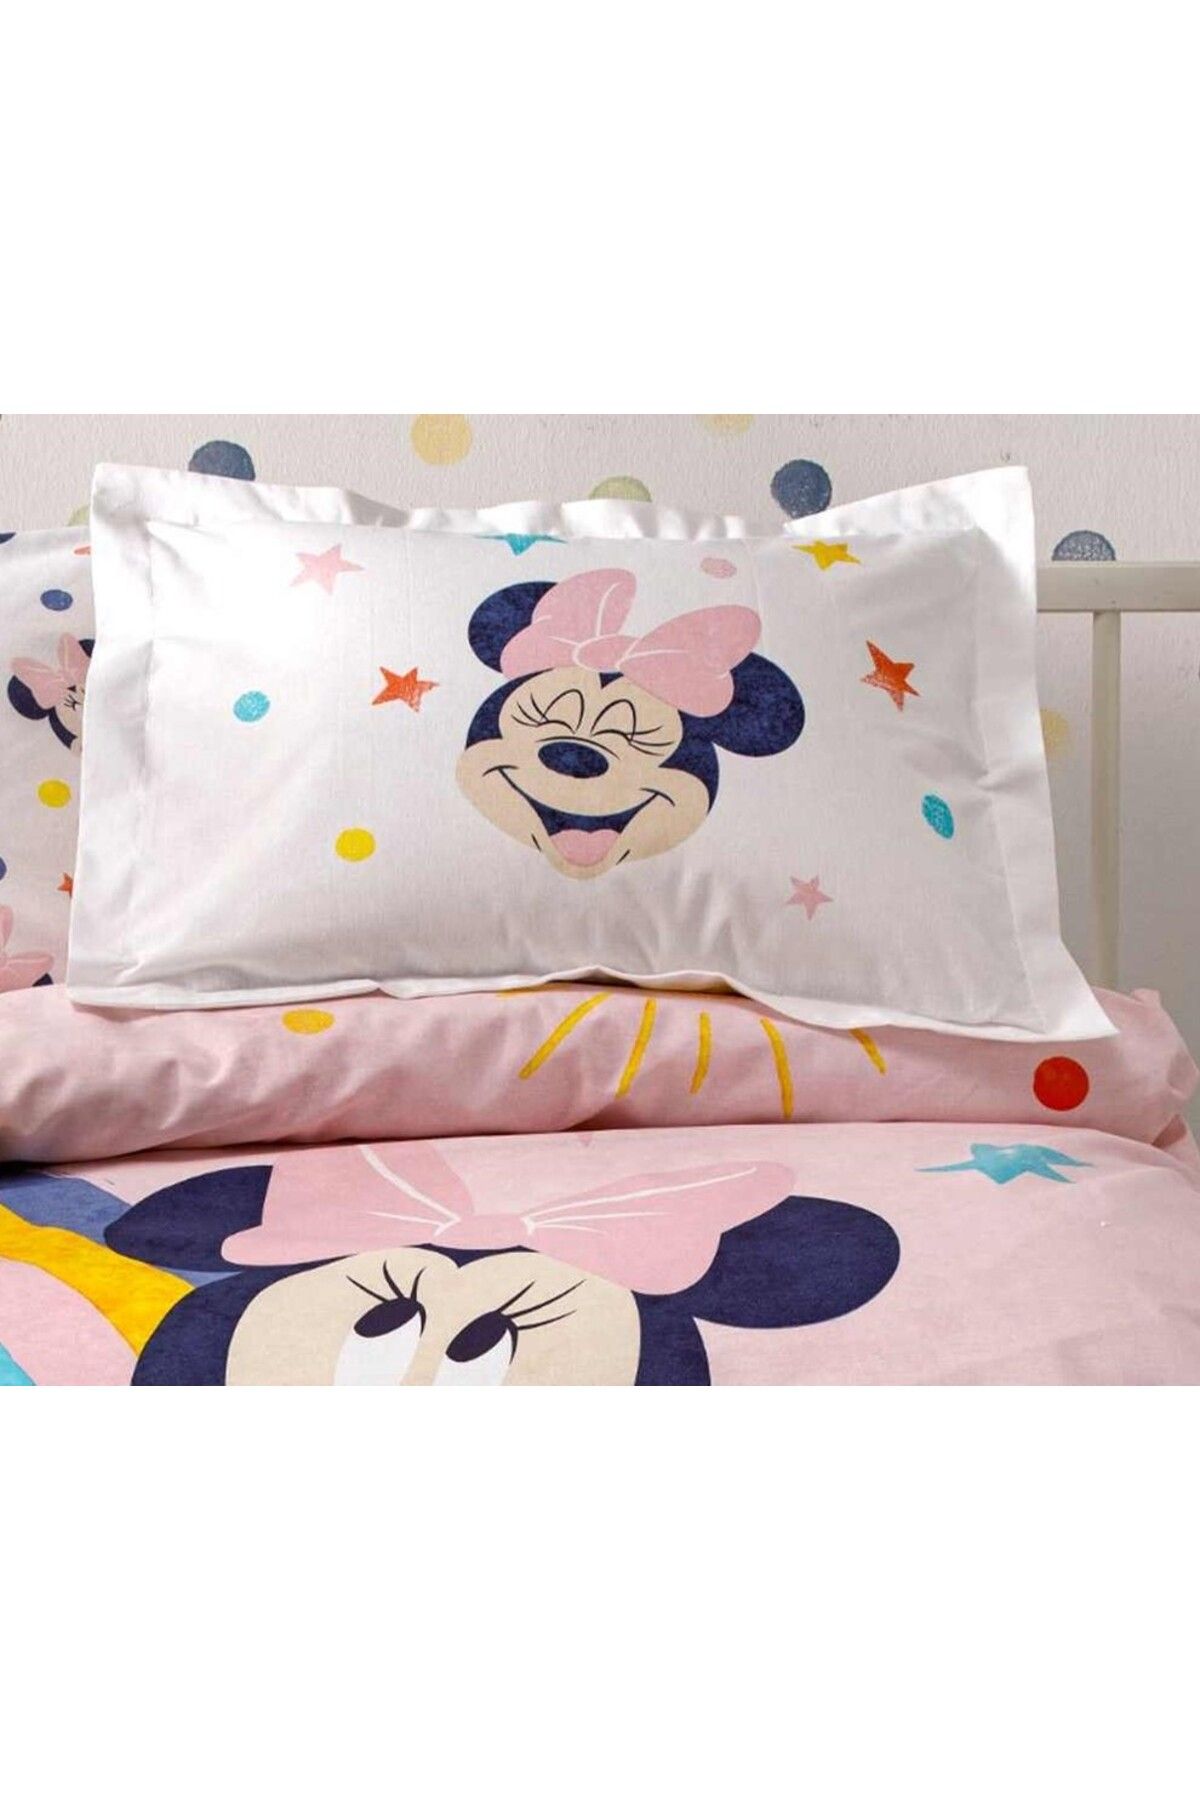 Taç Disney Minnie Mouse % 100 Pamuk Bebek Yastık Kılıfı 35x45 Cm1 Adet